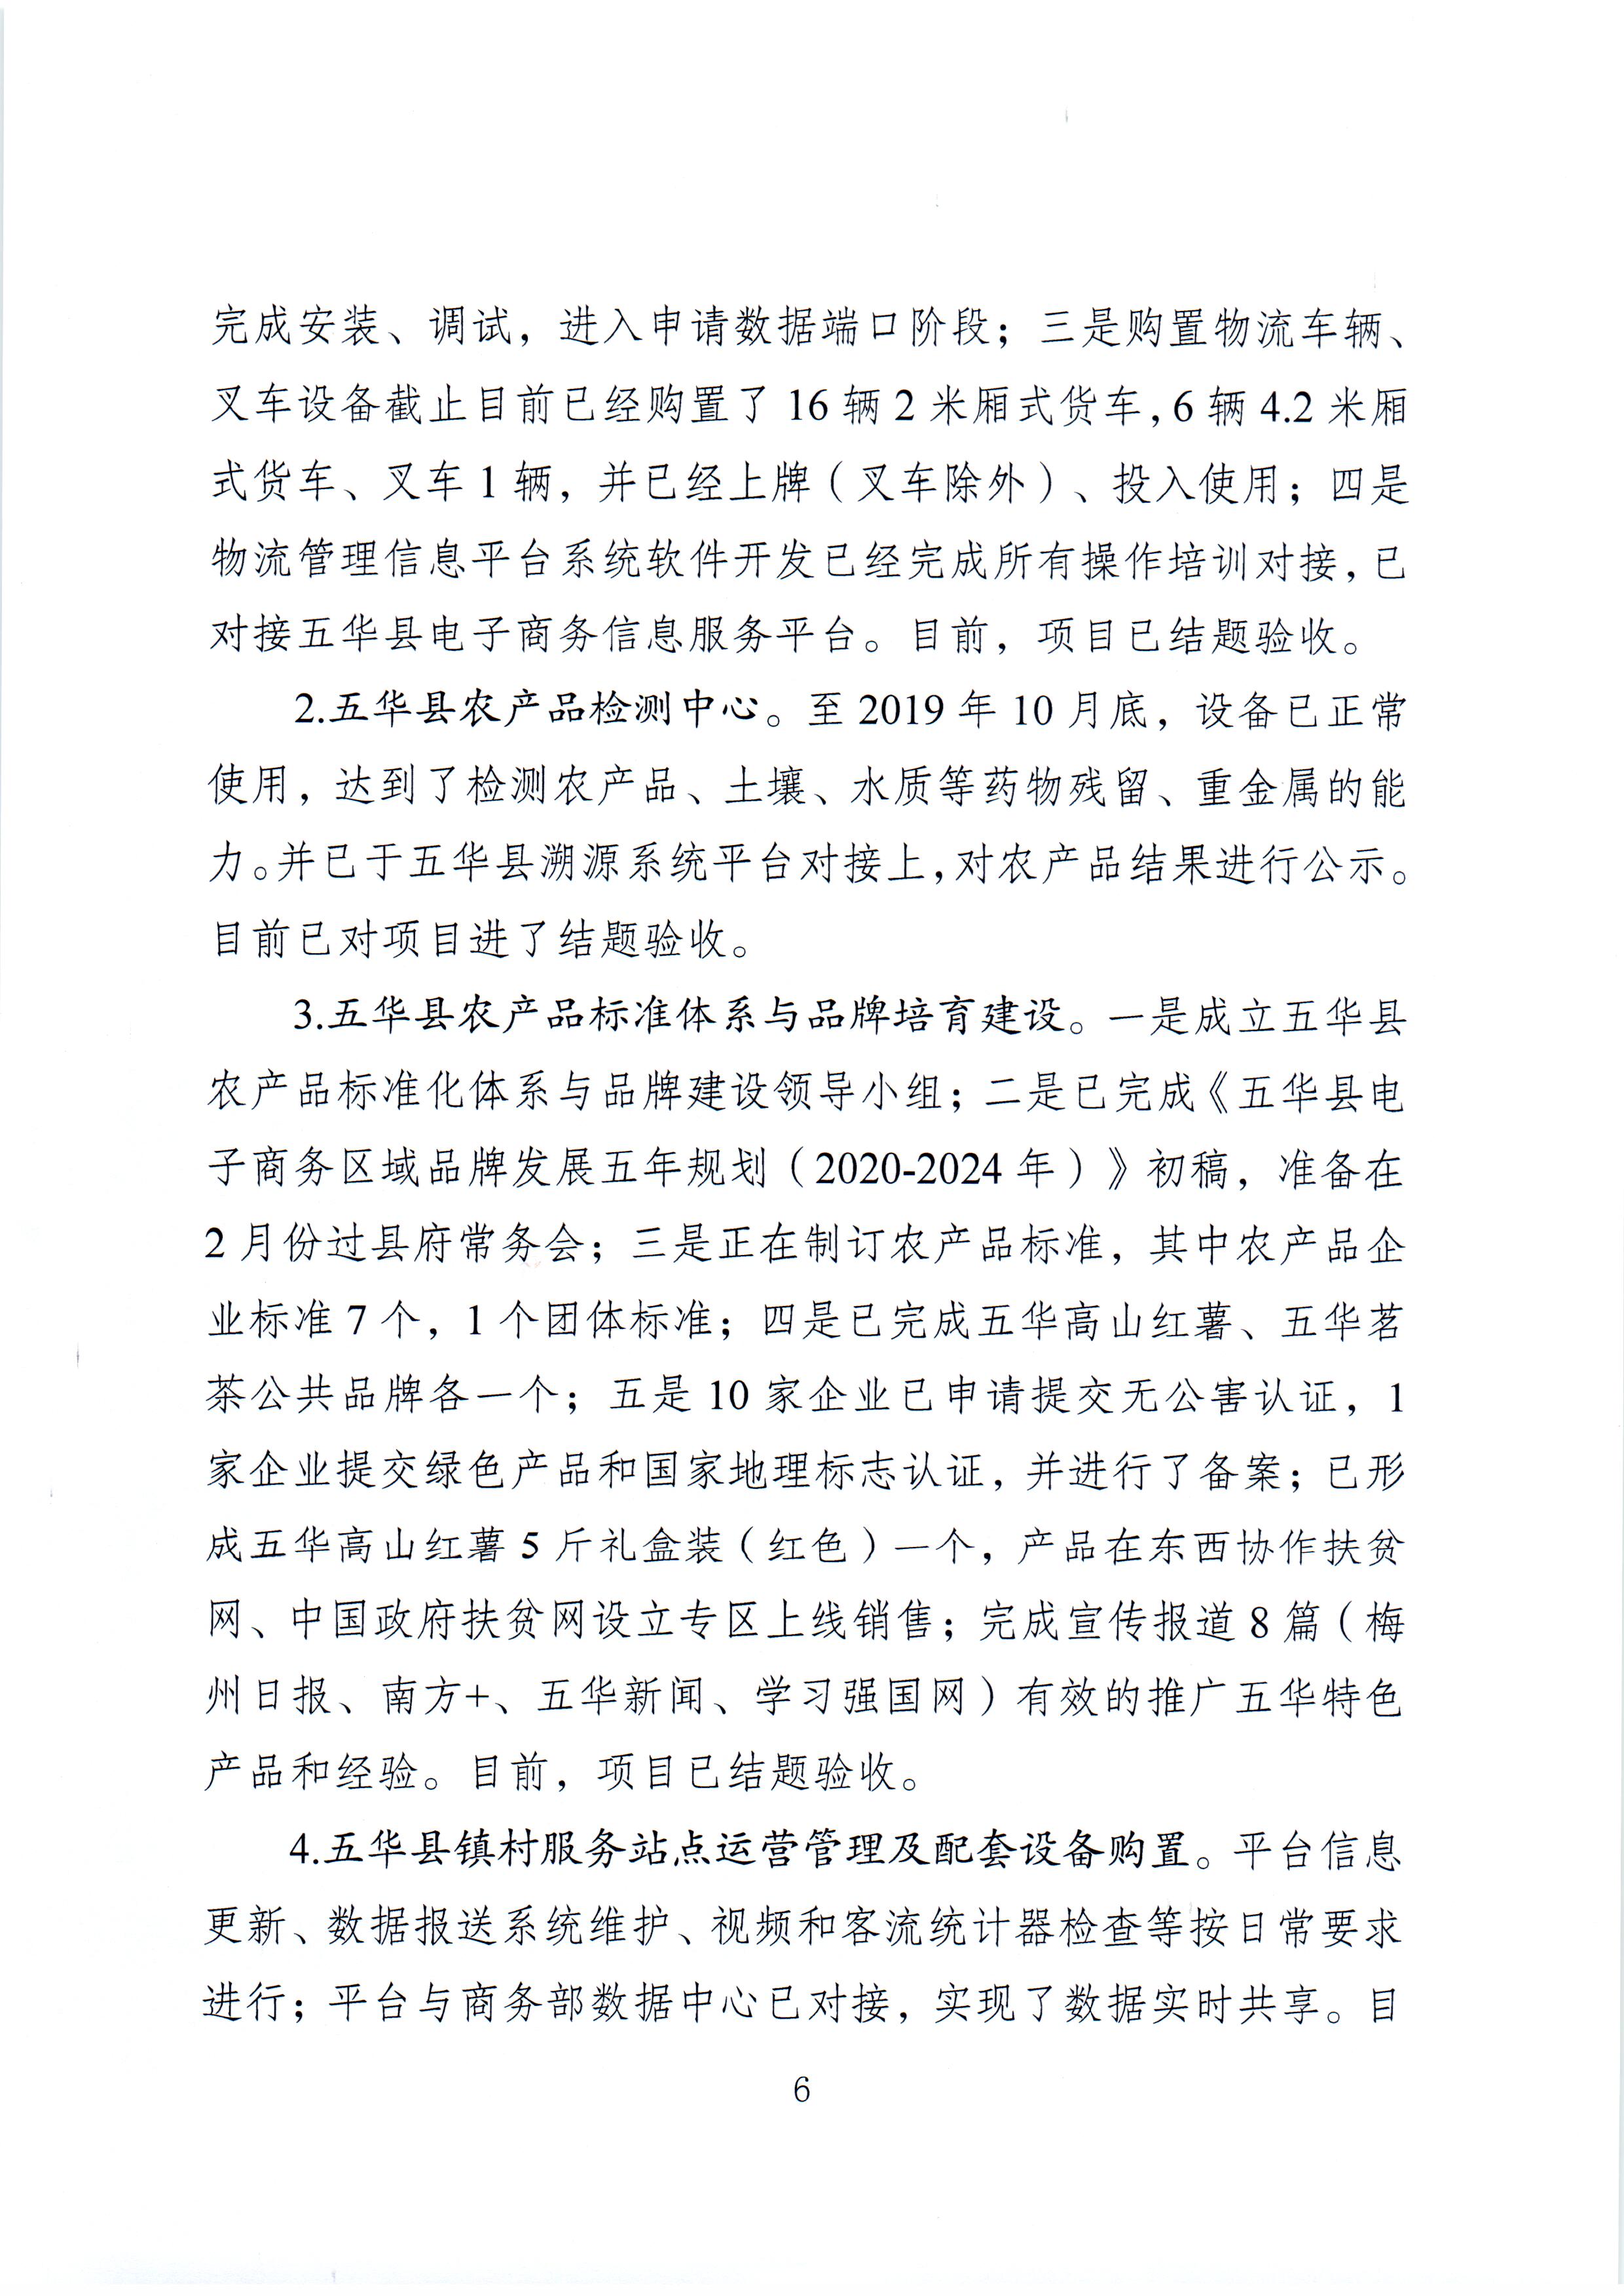 1、五华县电子商务进农村综合示范项目2021年3月工作推进情况（领导小组办公室）--（2021年4月5日确定版） (6).jpg